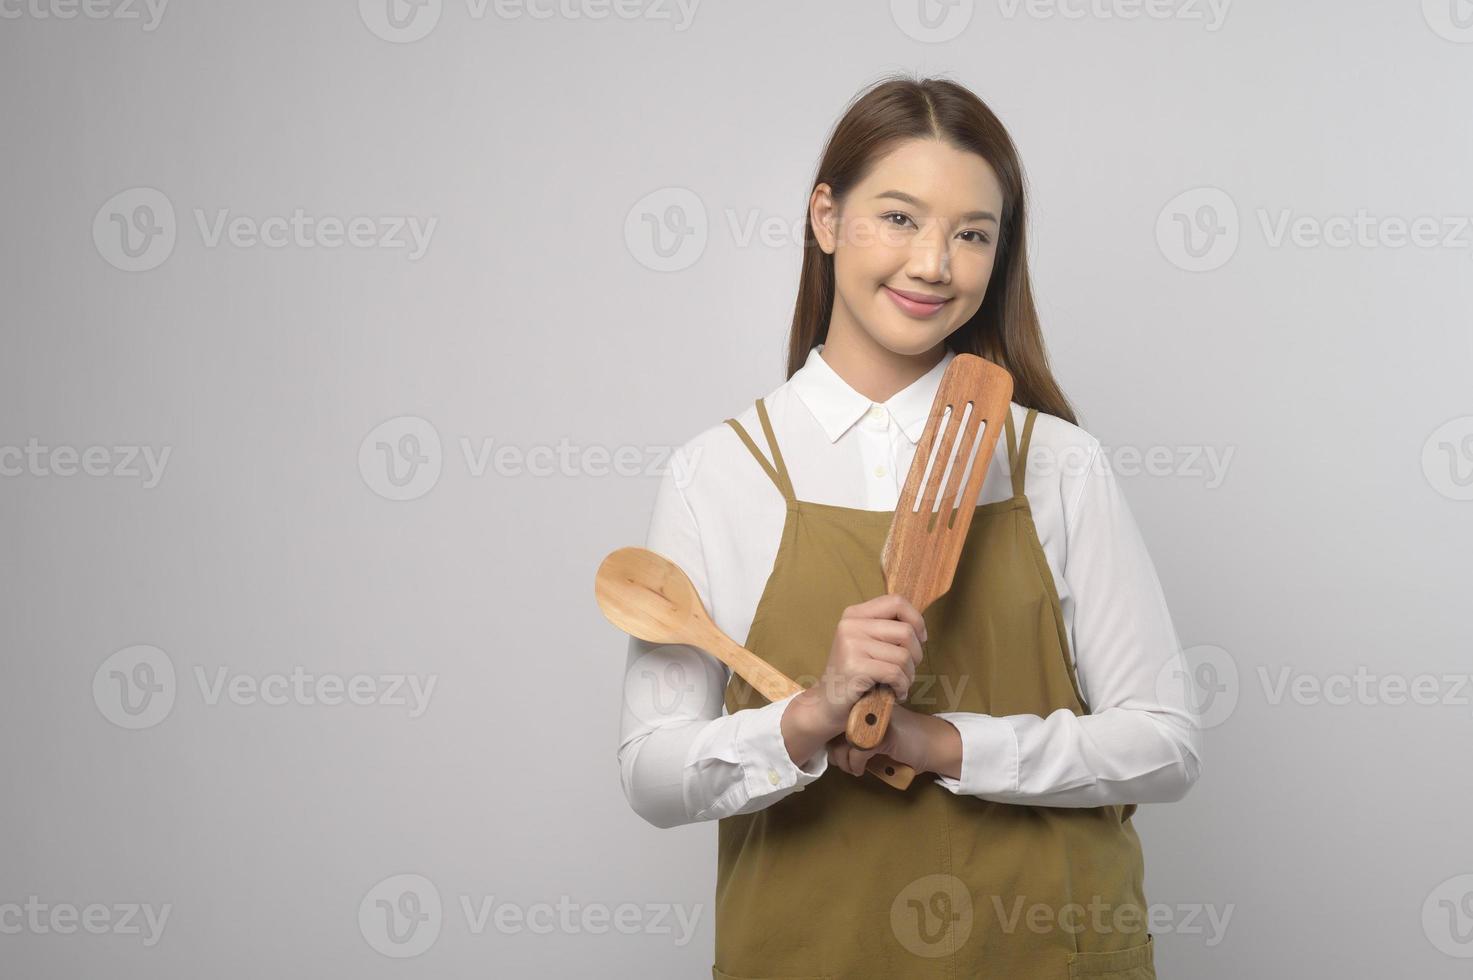 retrato de una joven asiática con delantal sobre estudio de fondo blanco, concepto de cocina y emprendedor foto